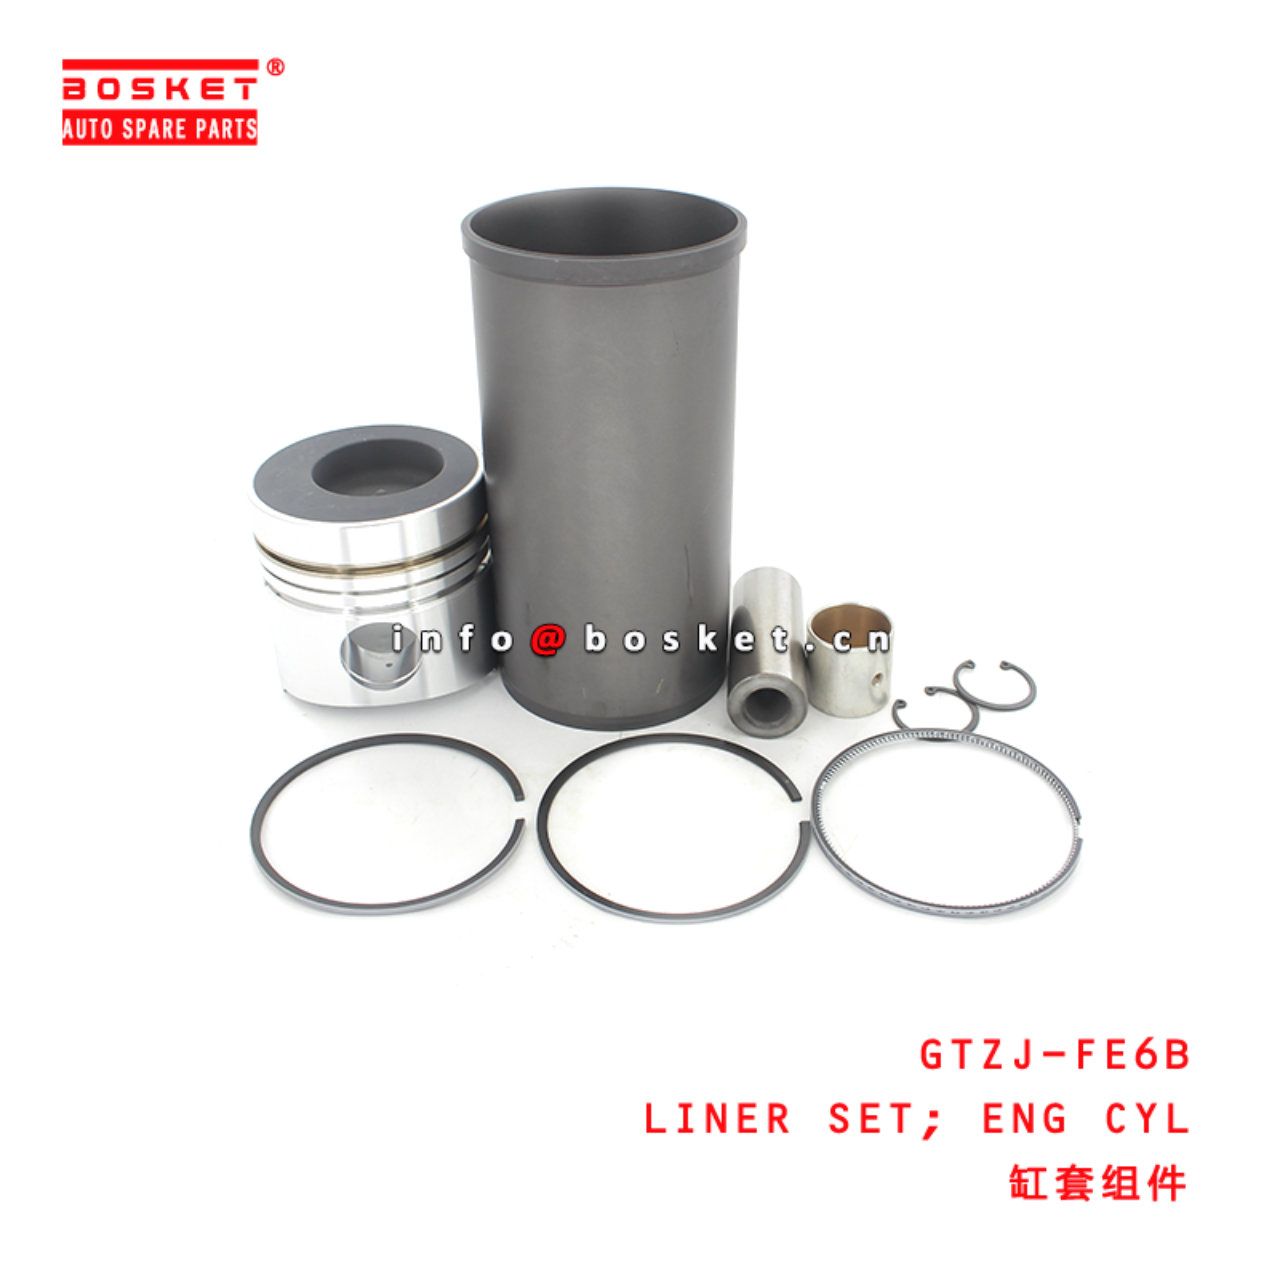 GTZJ-FE6B Engine Cylinder Liner Set Suitable for ISUZU UD-NISSAN FE6B- 12V